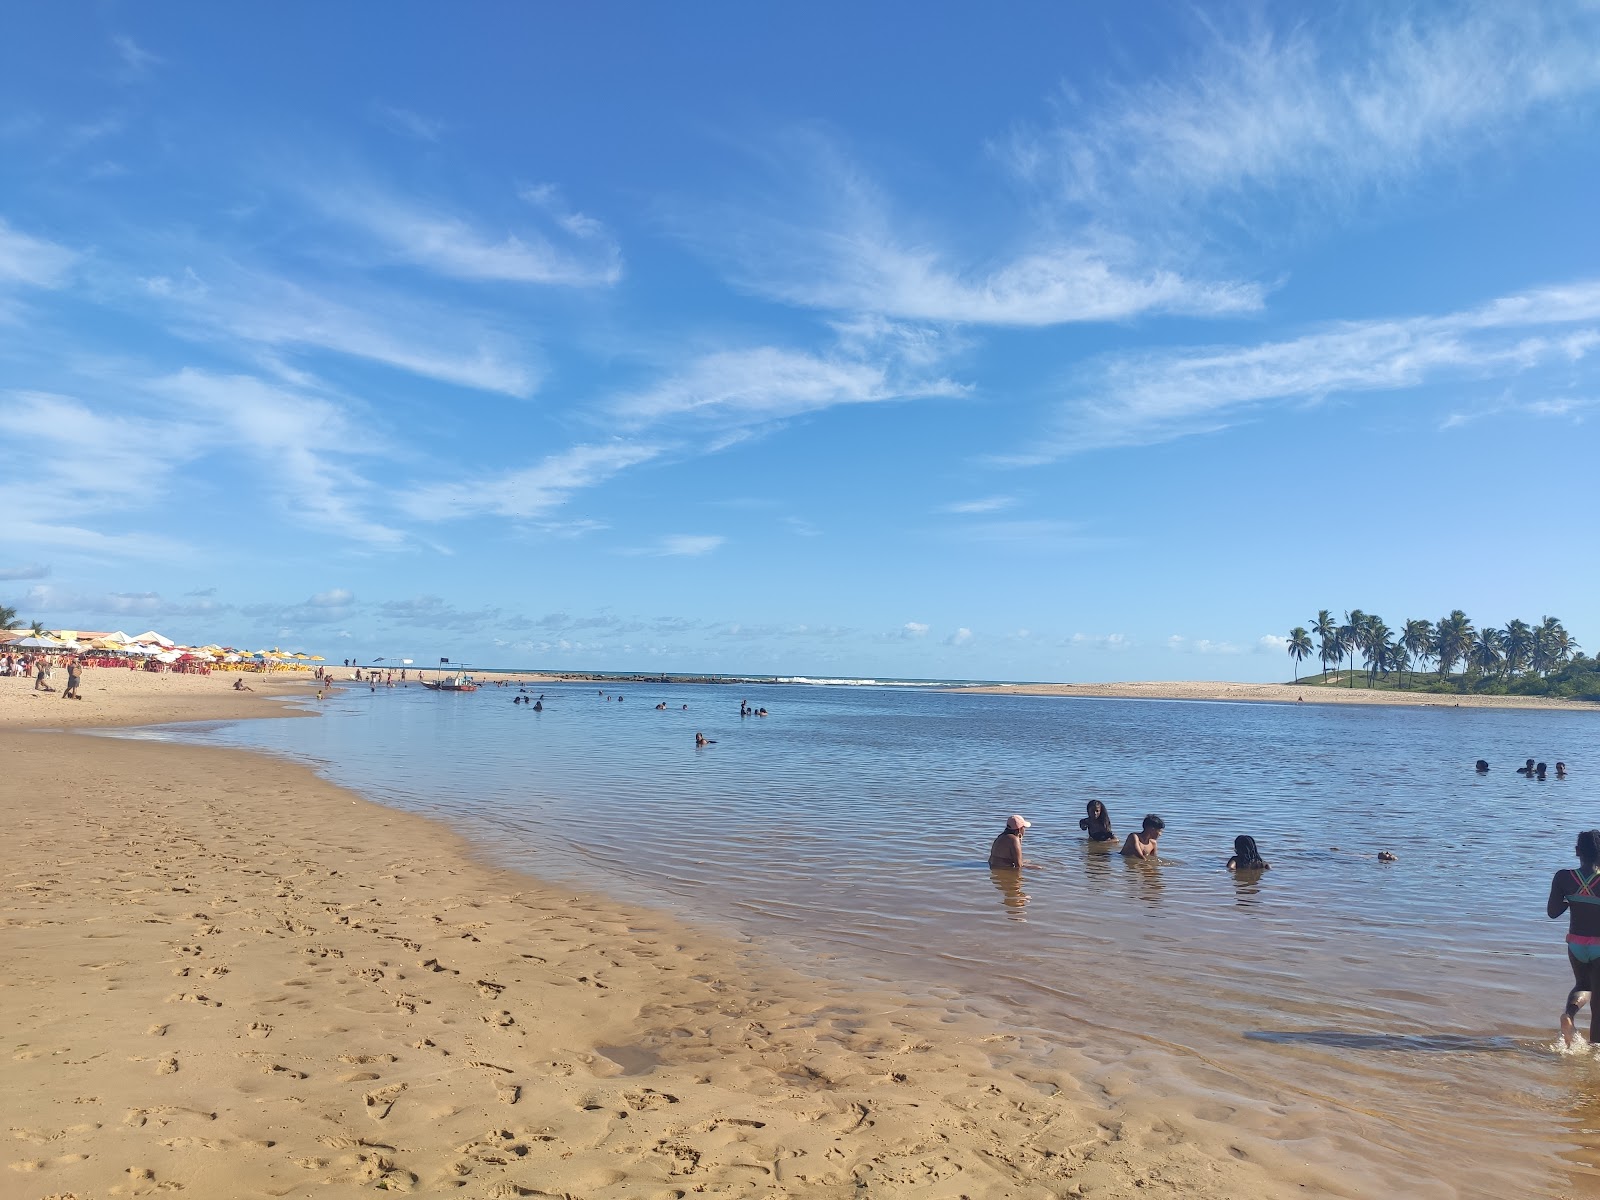 Zdjęcie Praia da Barra z powierzchnią jasny piasek